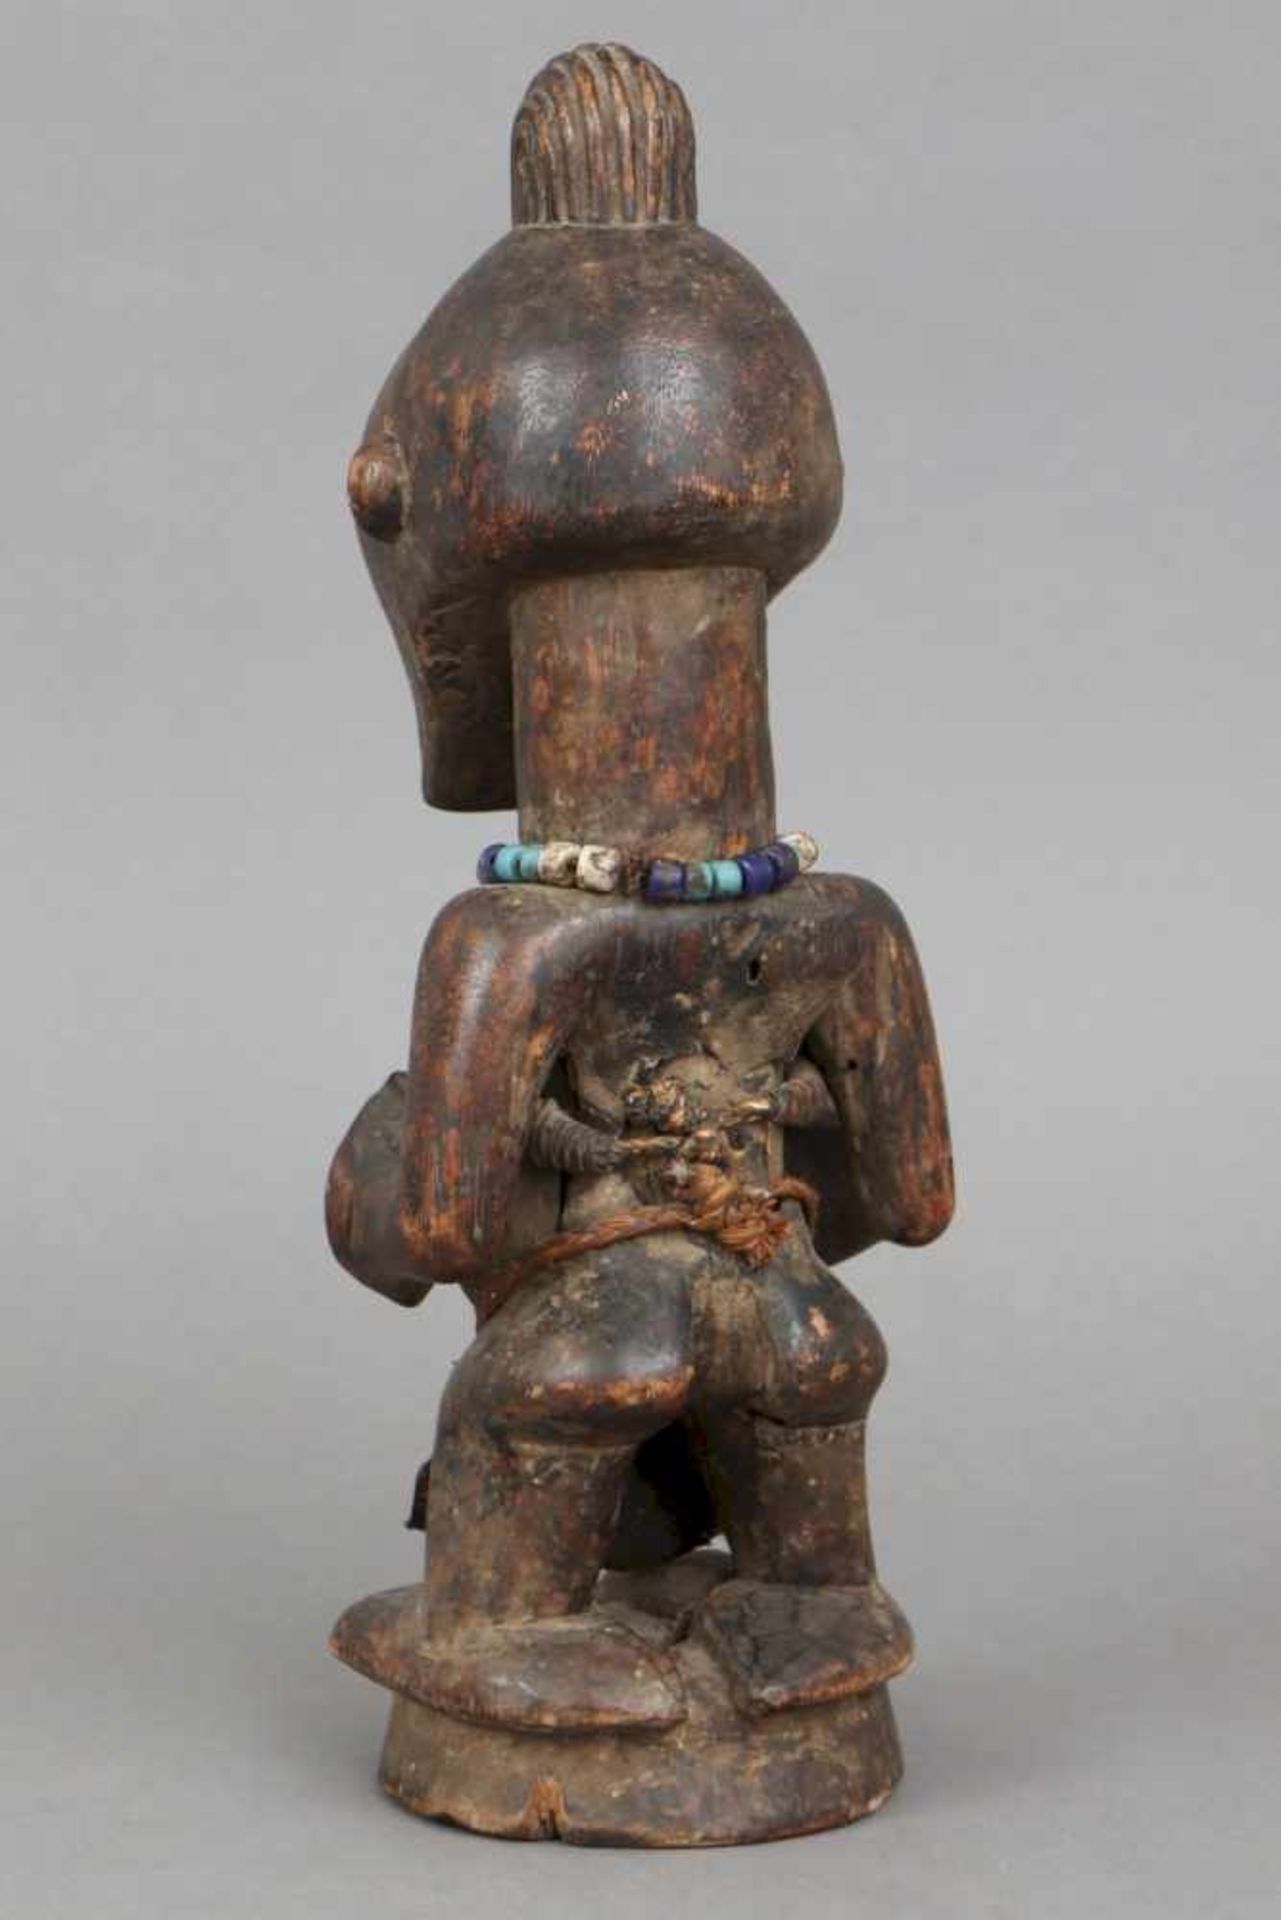 Afrikanische Ritualfigur, Kusu, Kongo stehende weibliche Fruchtbarkleitsfigur, Holz, geschnitzt und - Bild 2 aus 2